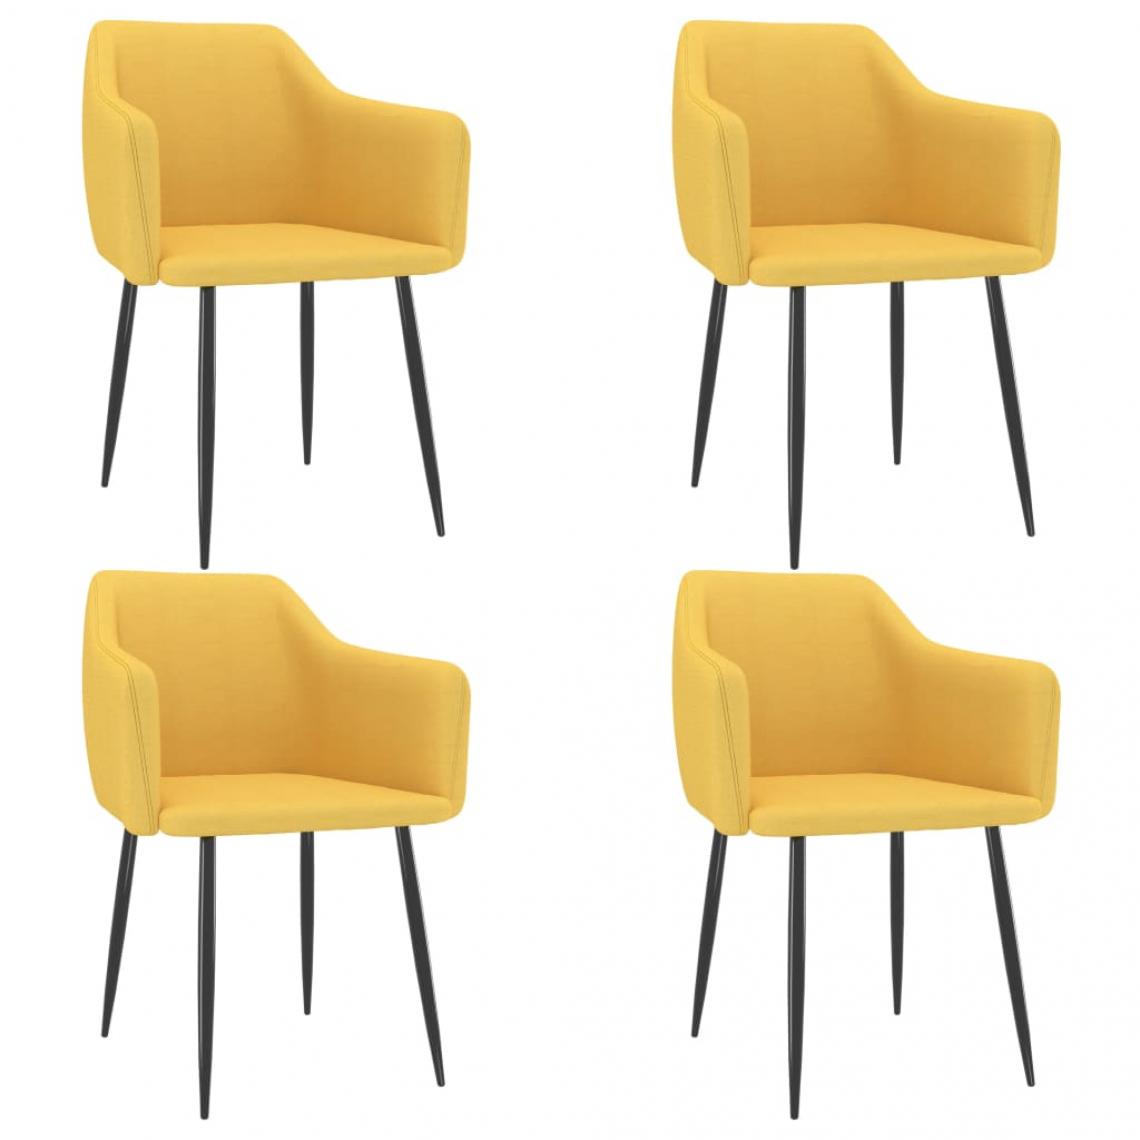 Decoshop26 - Lot de 4 chaises de salle à manger cuisine design moderne tissu jaune CDS021653 - Chaises